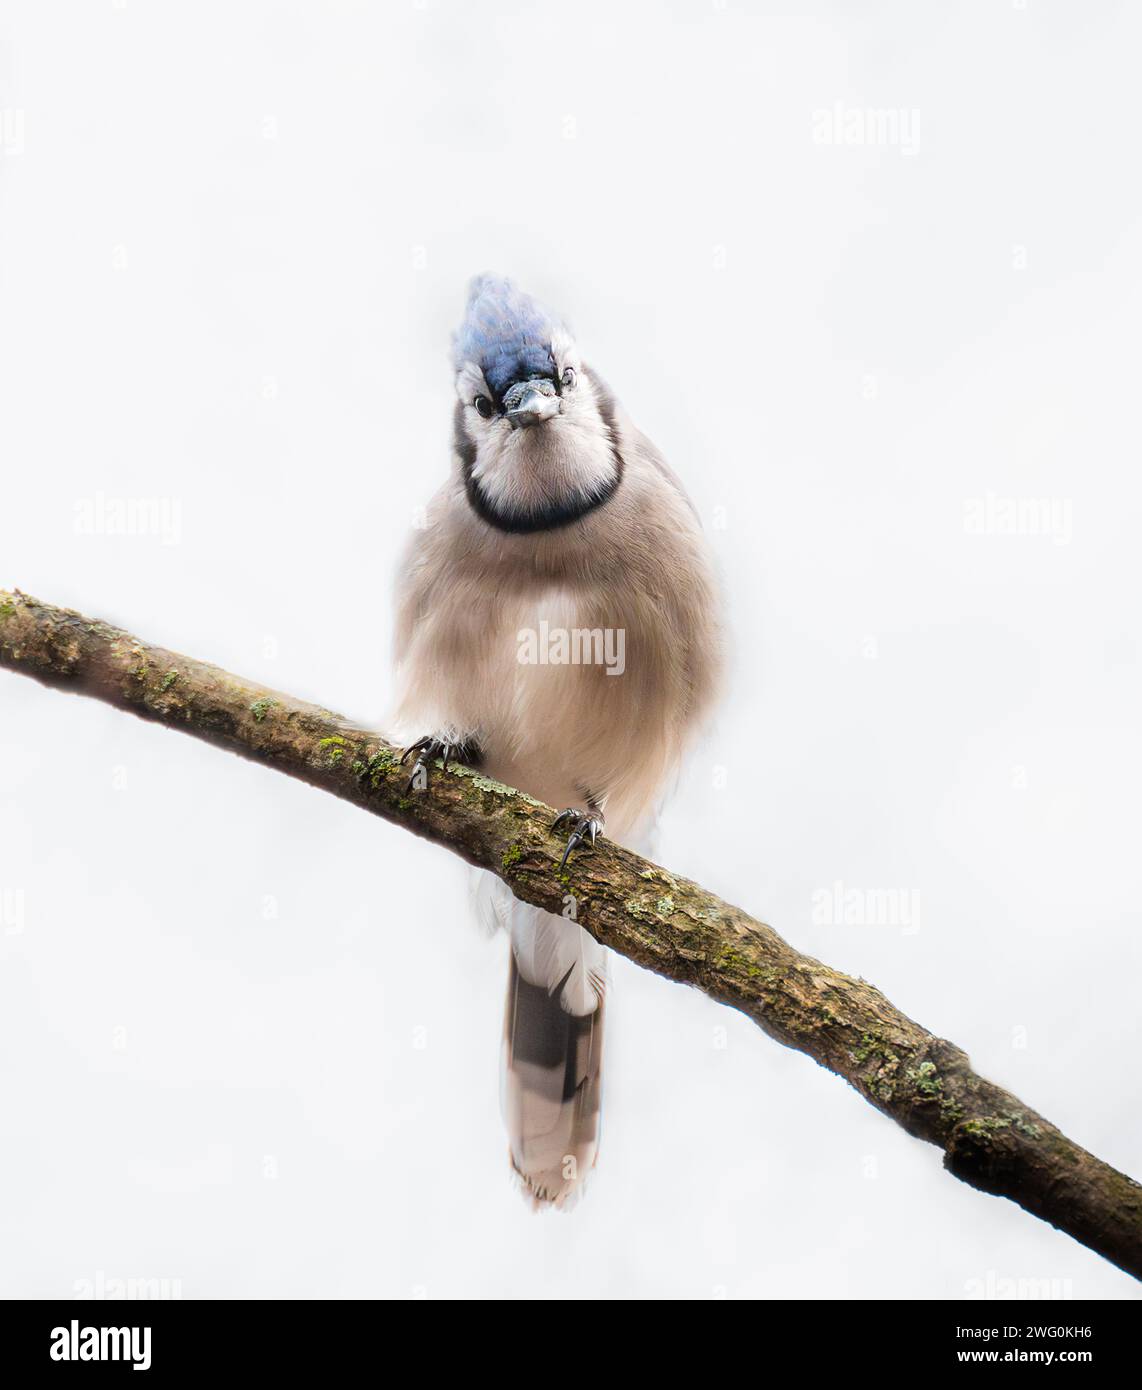 Nahaufnahme des neugierigen blauen jay Vogels, der auf einem Ast sitzt und in die Kamera blickt. Stockfoto